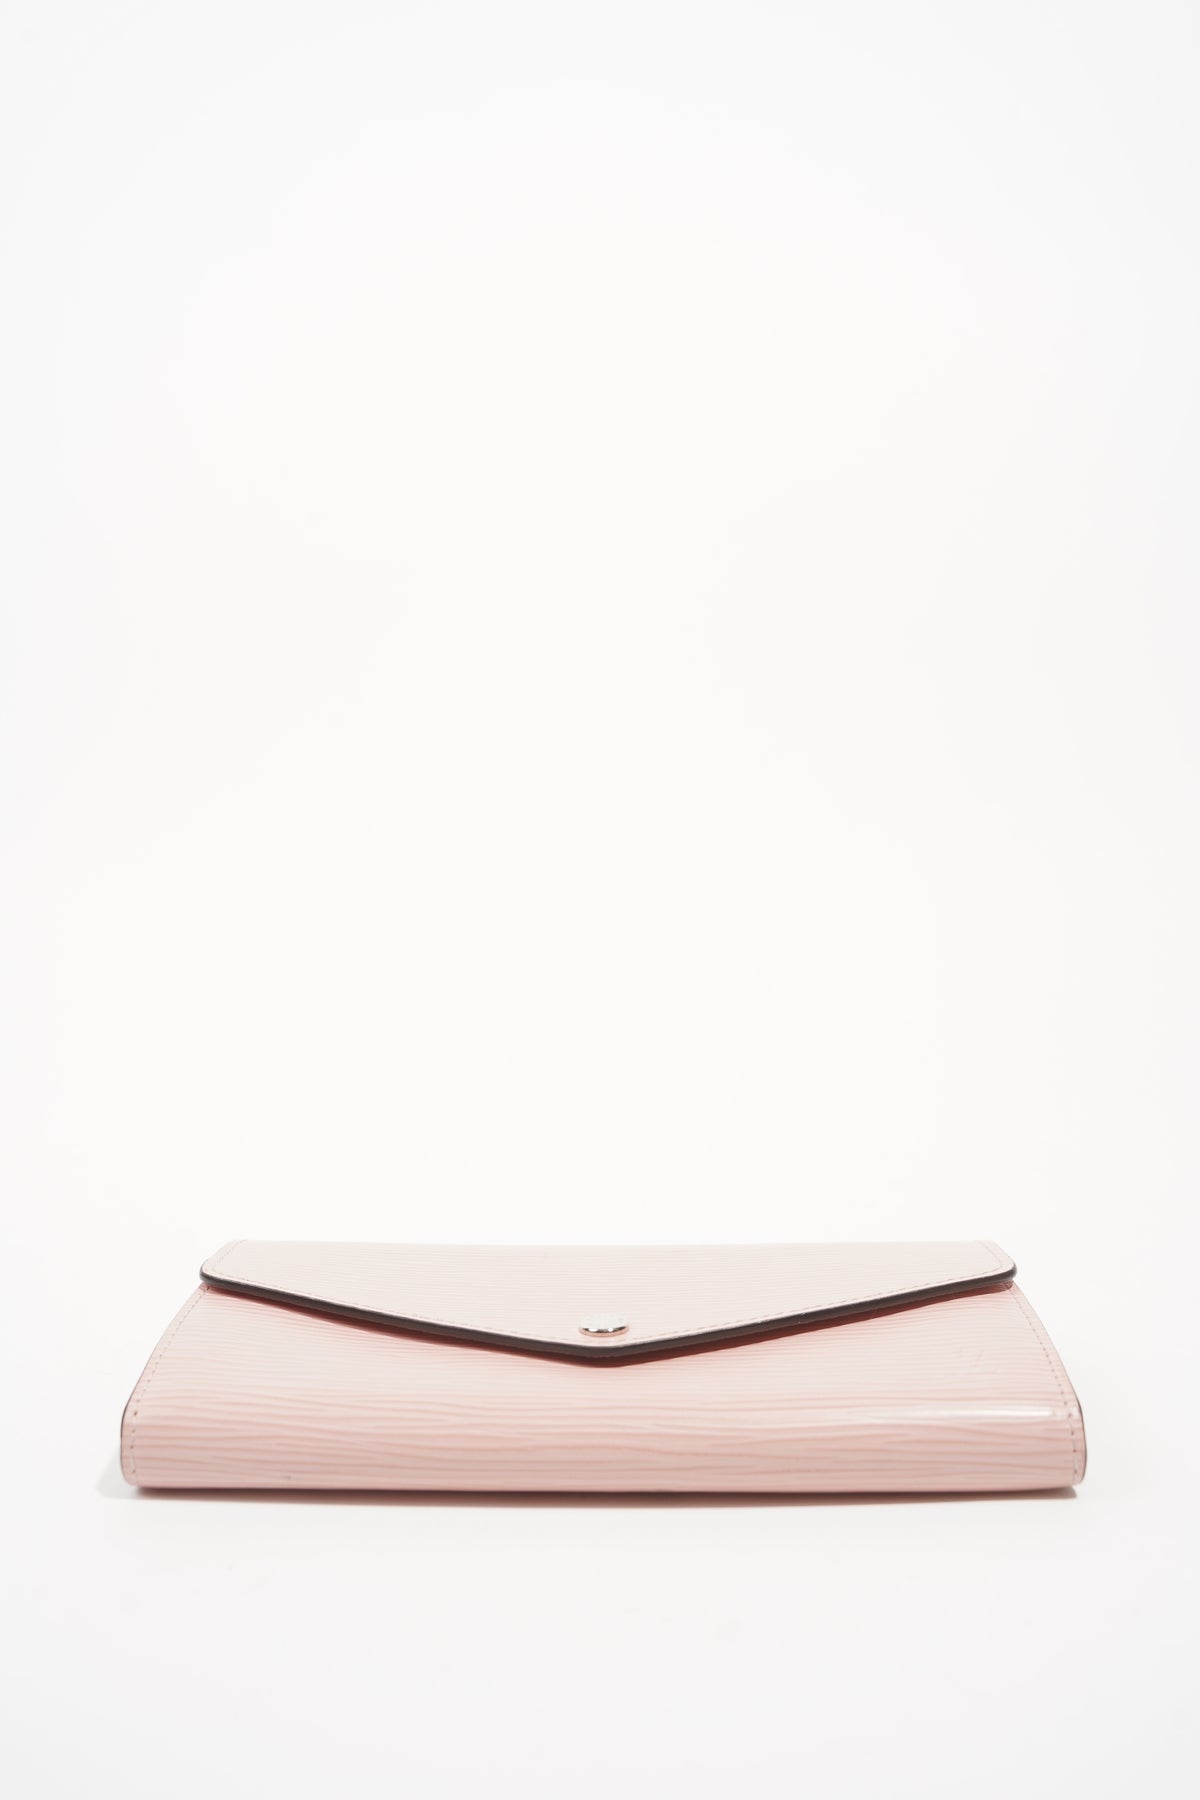 LOUIS VUITTON purse M60604 Portefeiulle Sarah Epi Leather pink